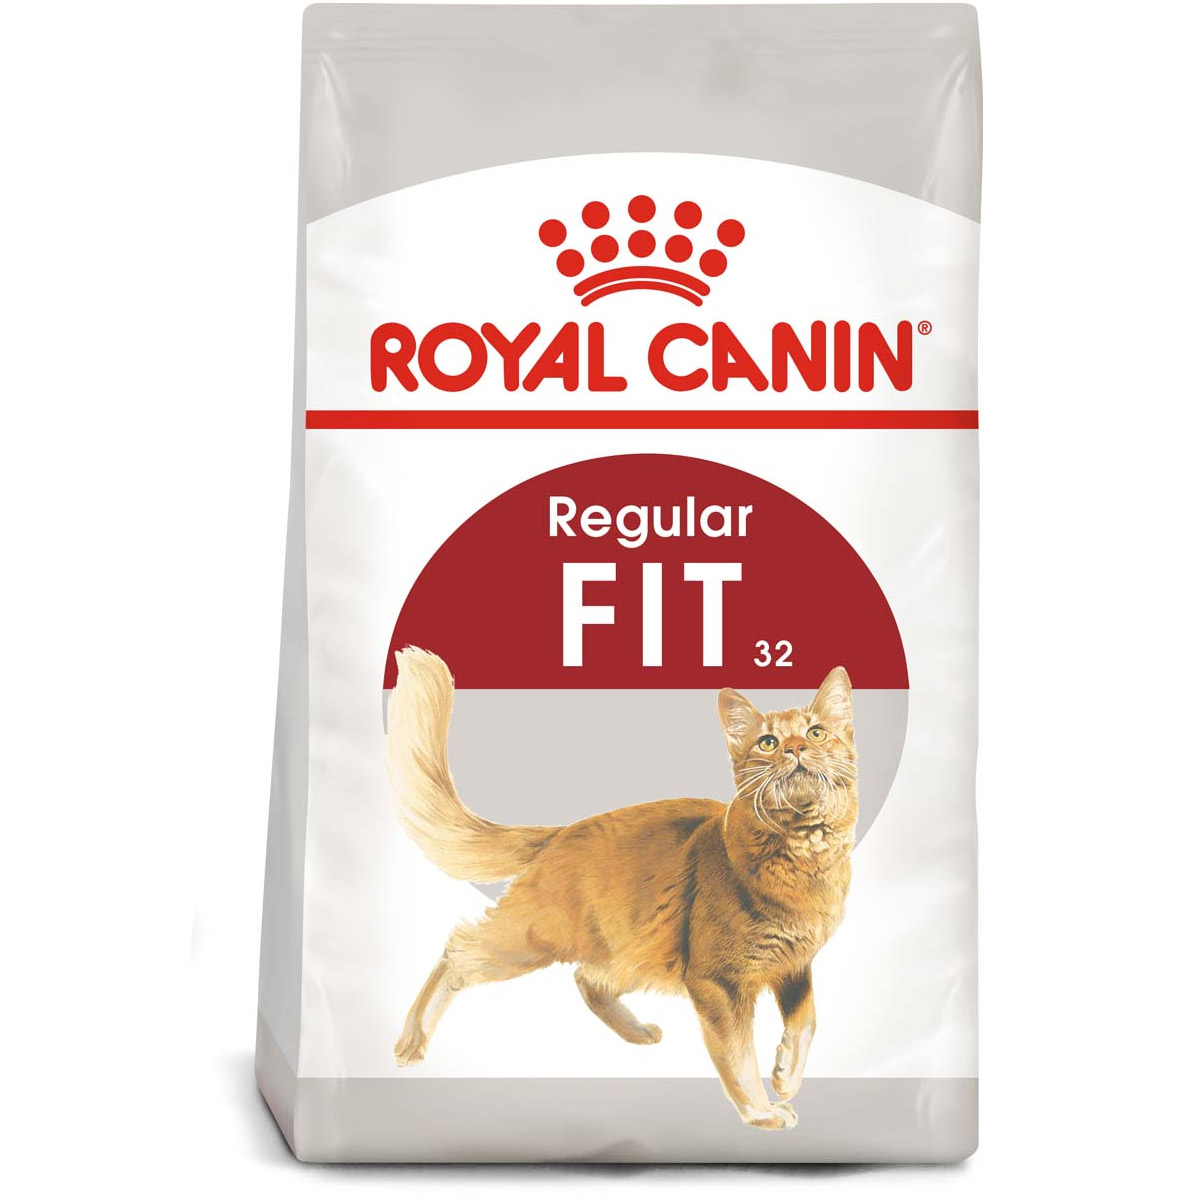 ROYAL CANIN FIT granule pro aktivní kočky 2 kg